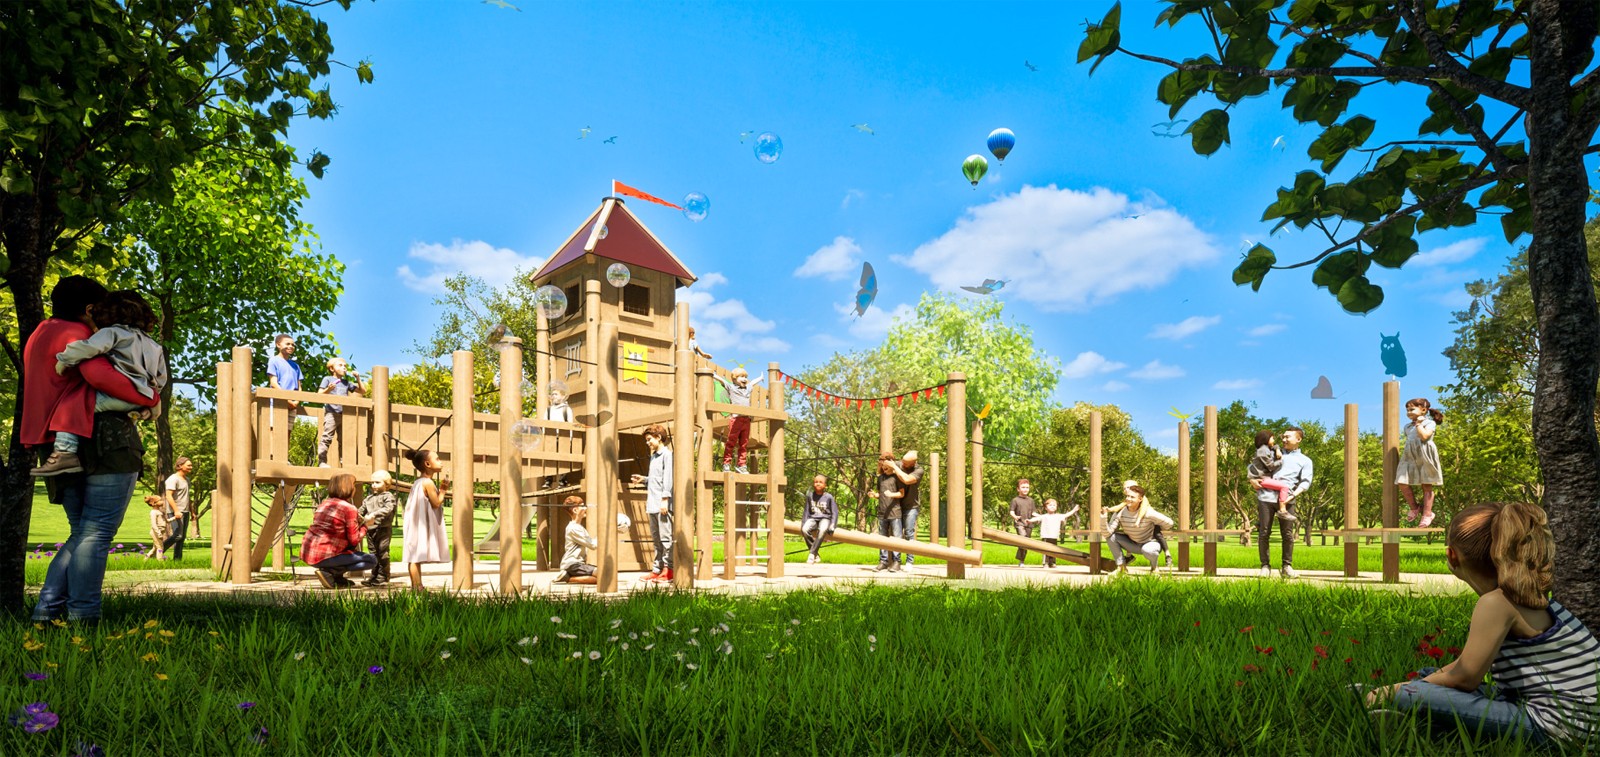 Piirtäjänpuistoon tulossa oleva lasten valitsema leikkiväline